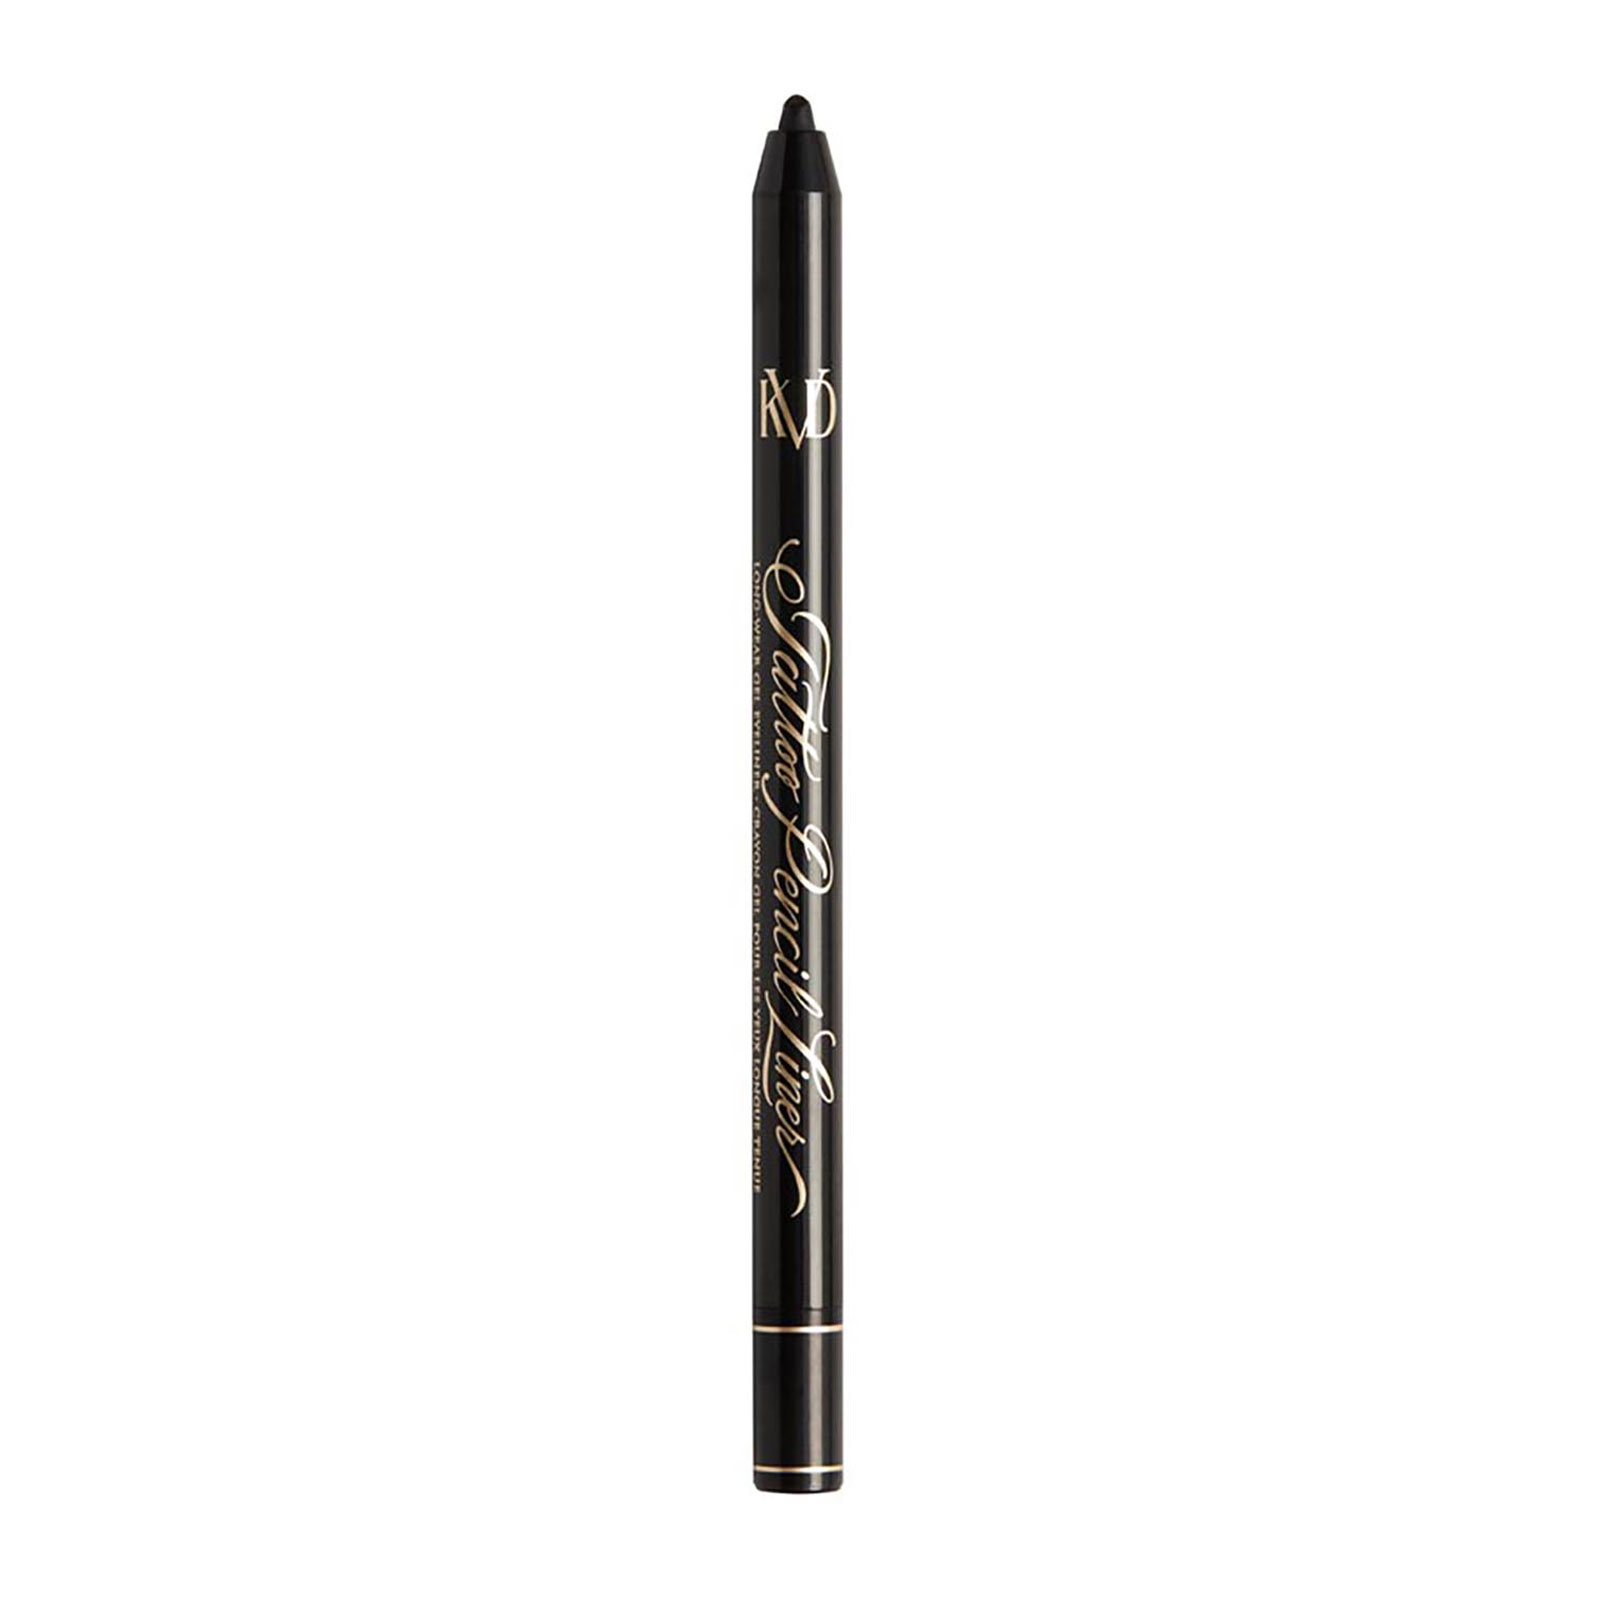 Kvd Beauty Tattoo Pencil Liner Waterproof Long-Wear Gel Eyeliner 0.5G Trooper Black